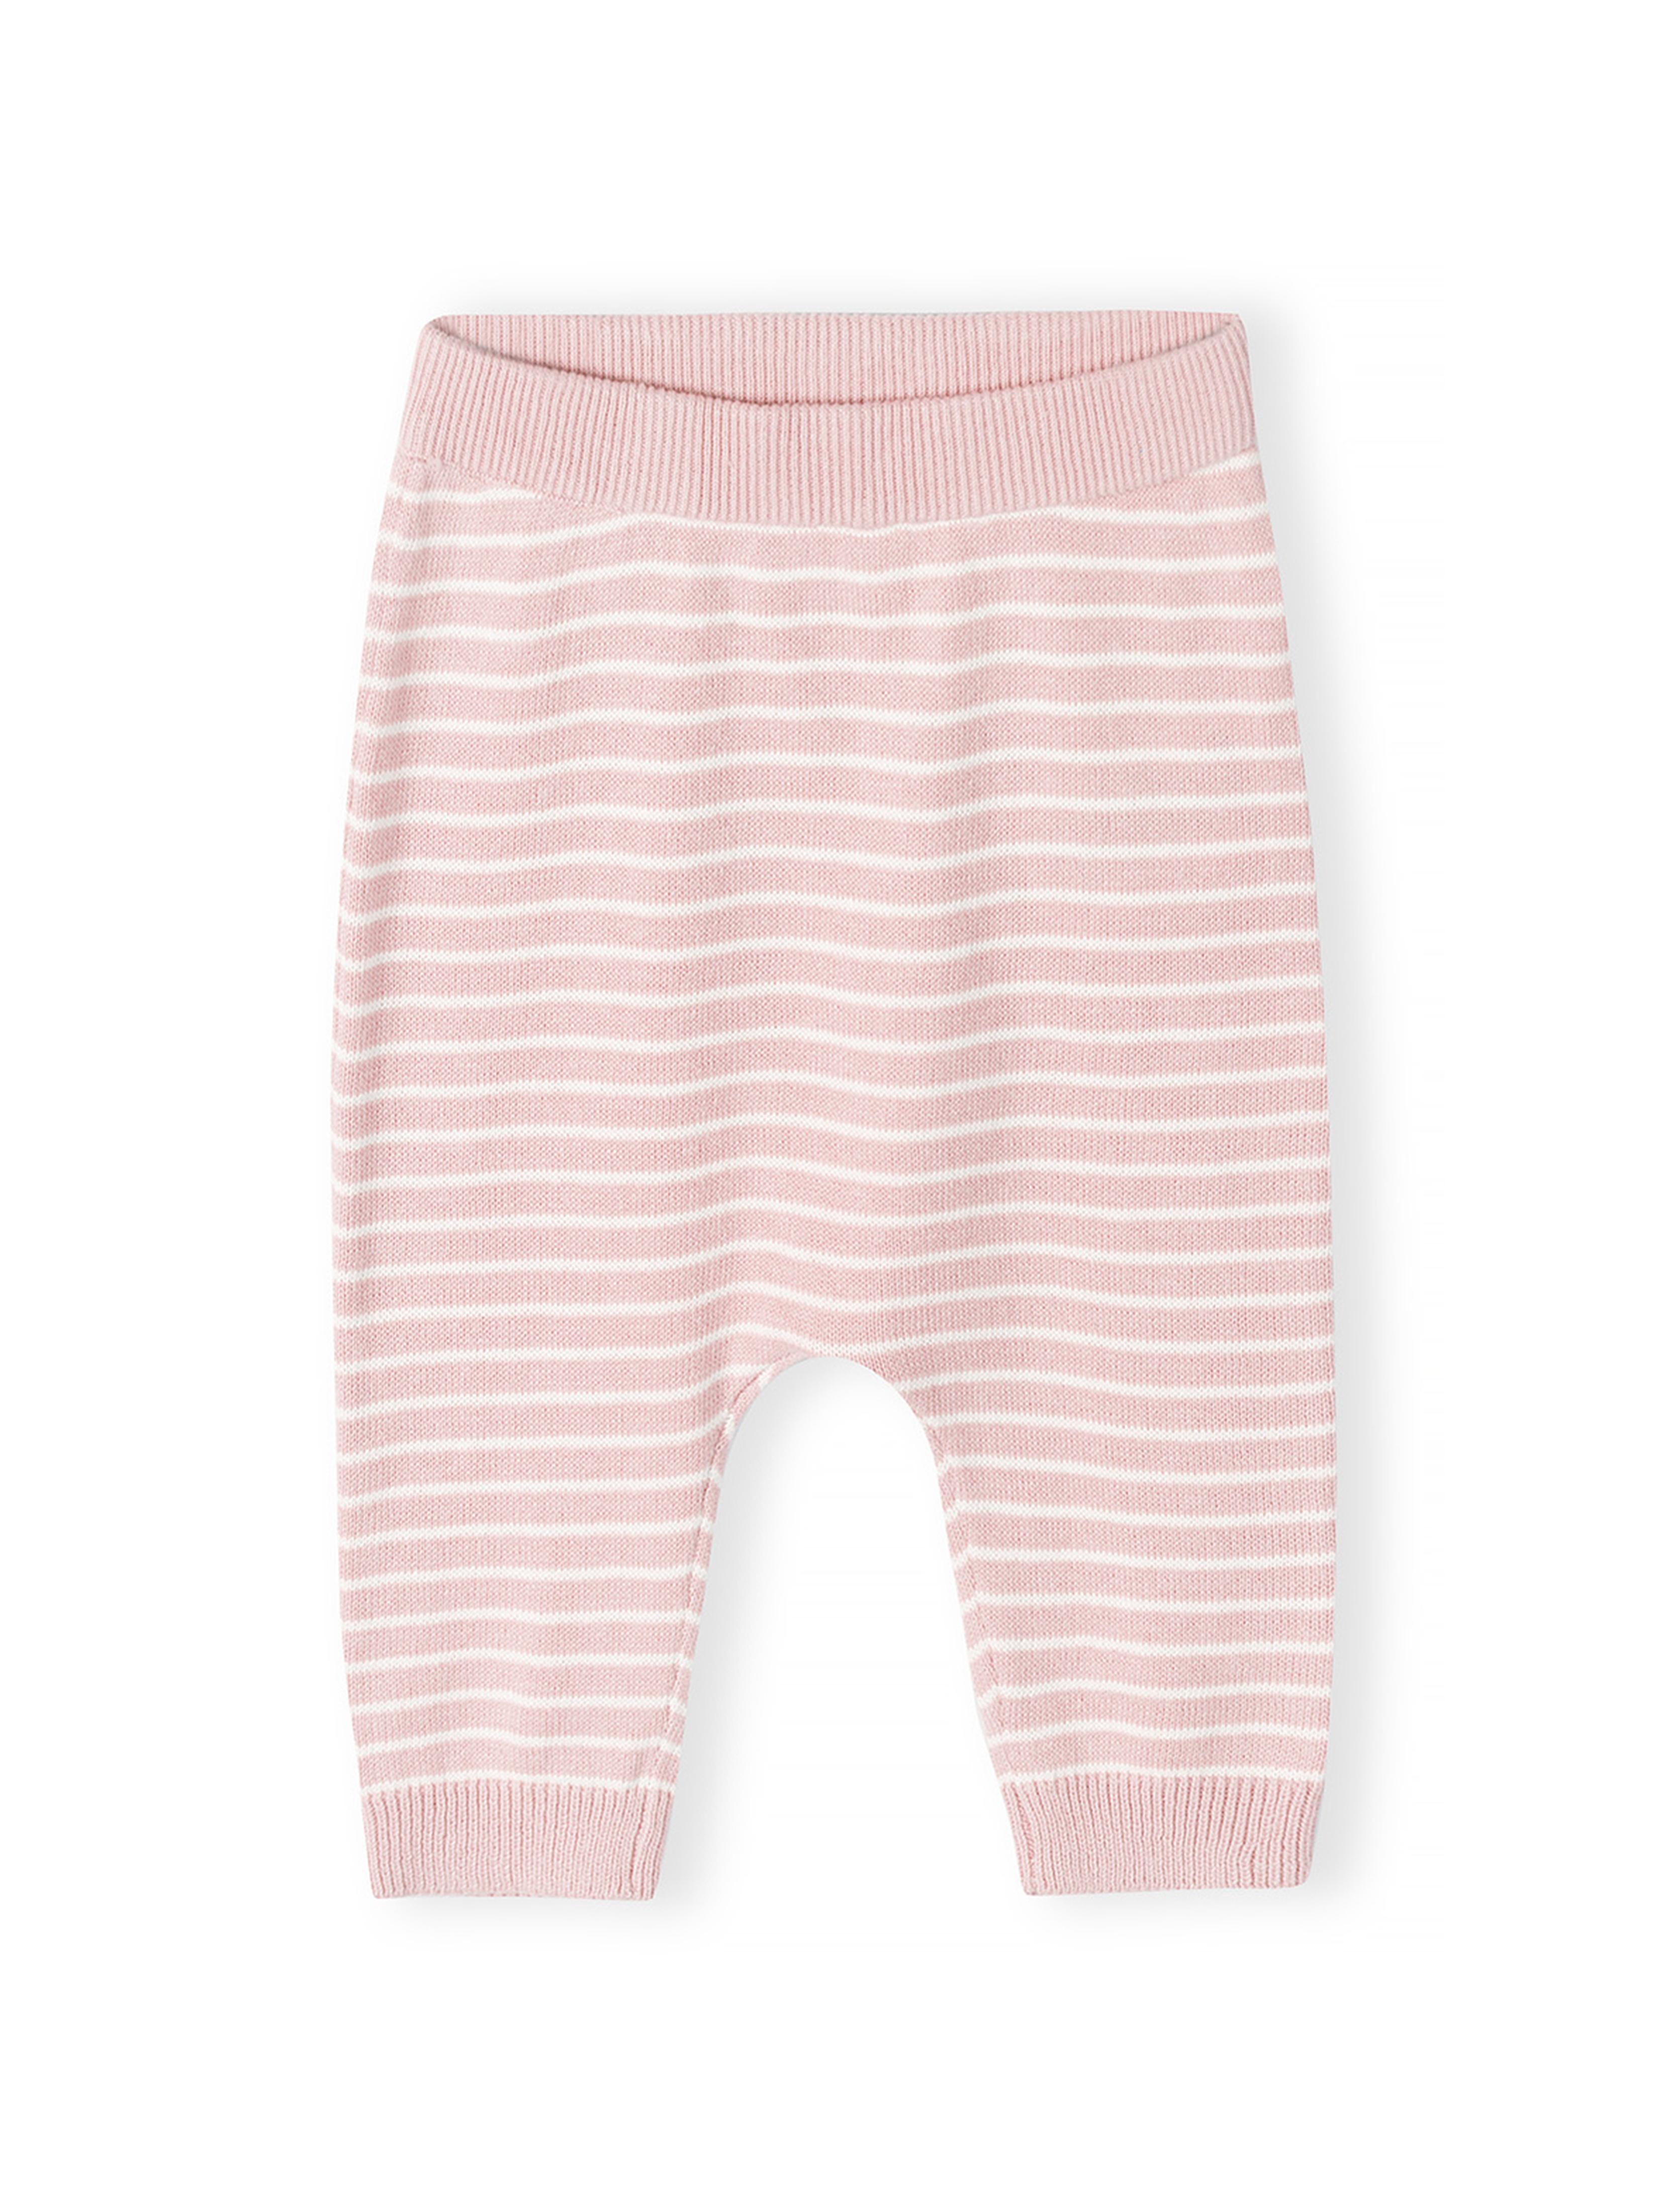 Różowy komplet niemowlęcy z bawełny- bluzka i legginsy- Hello little one